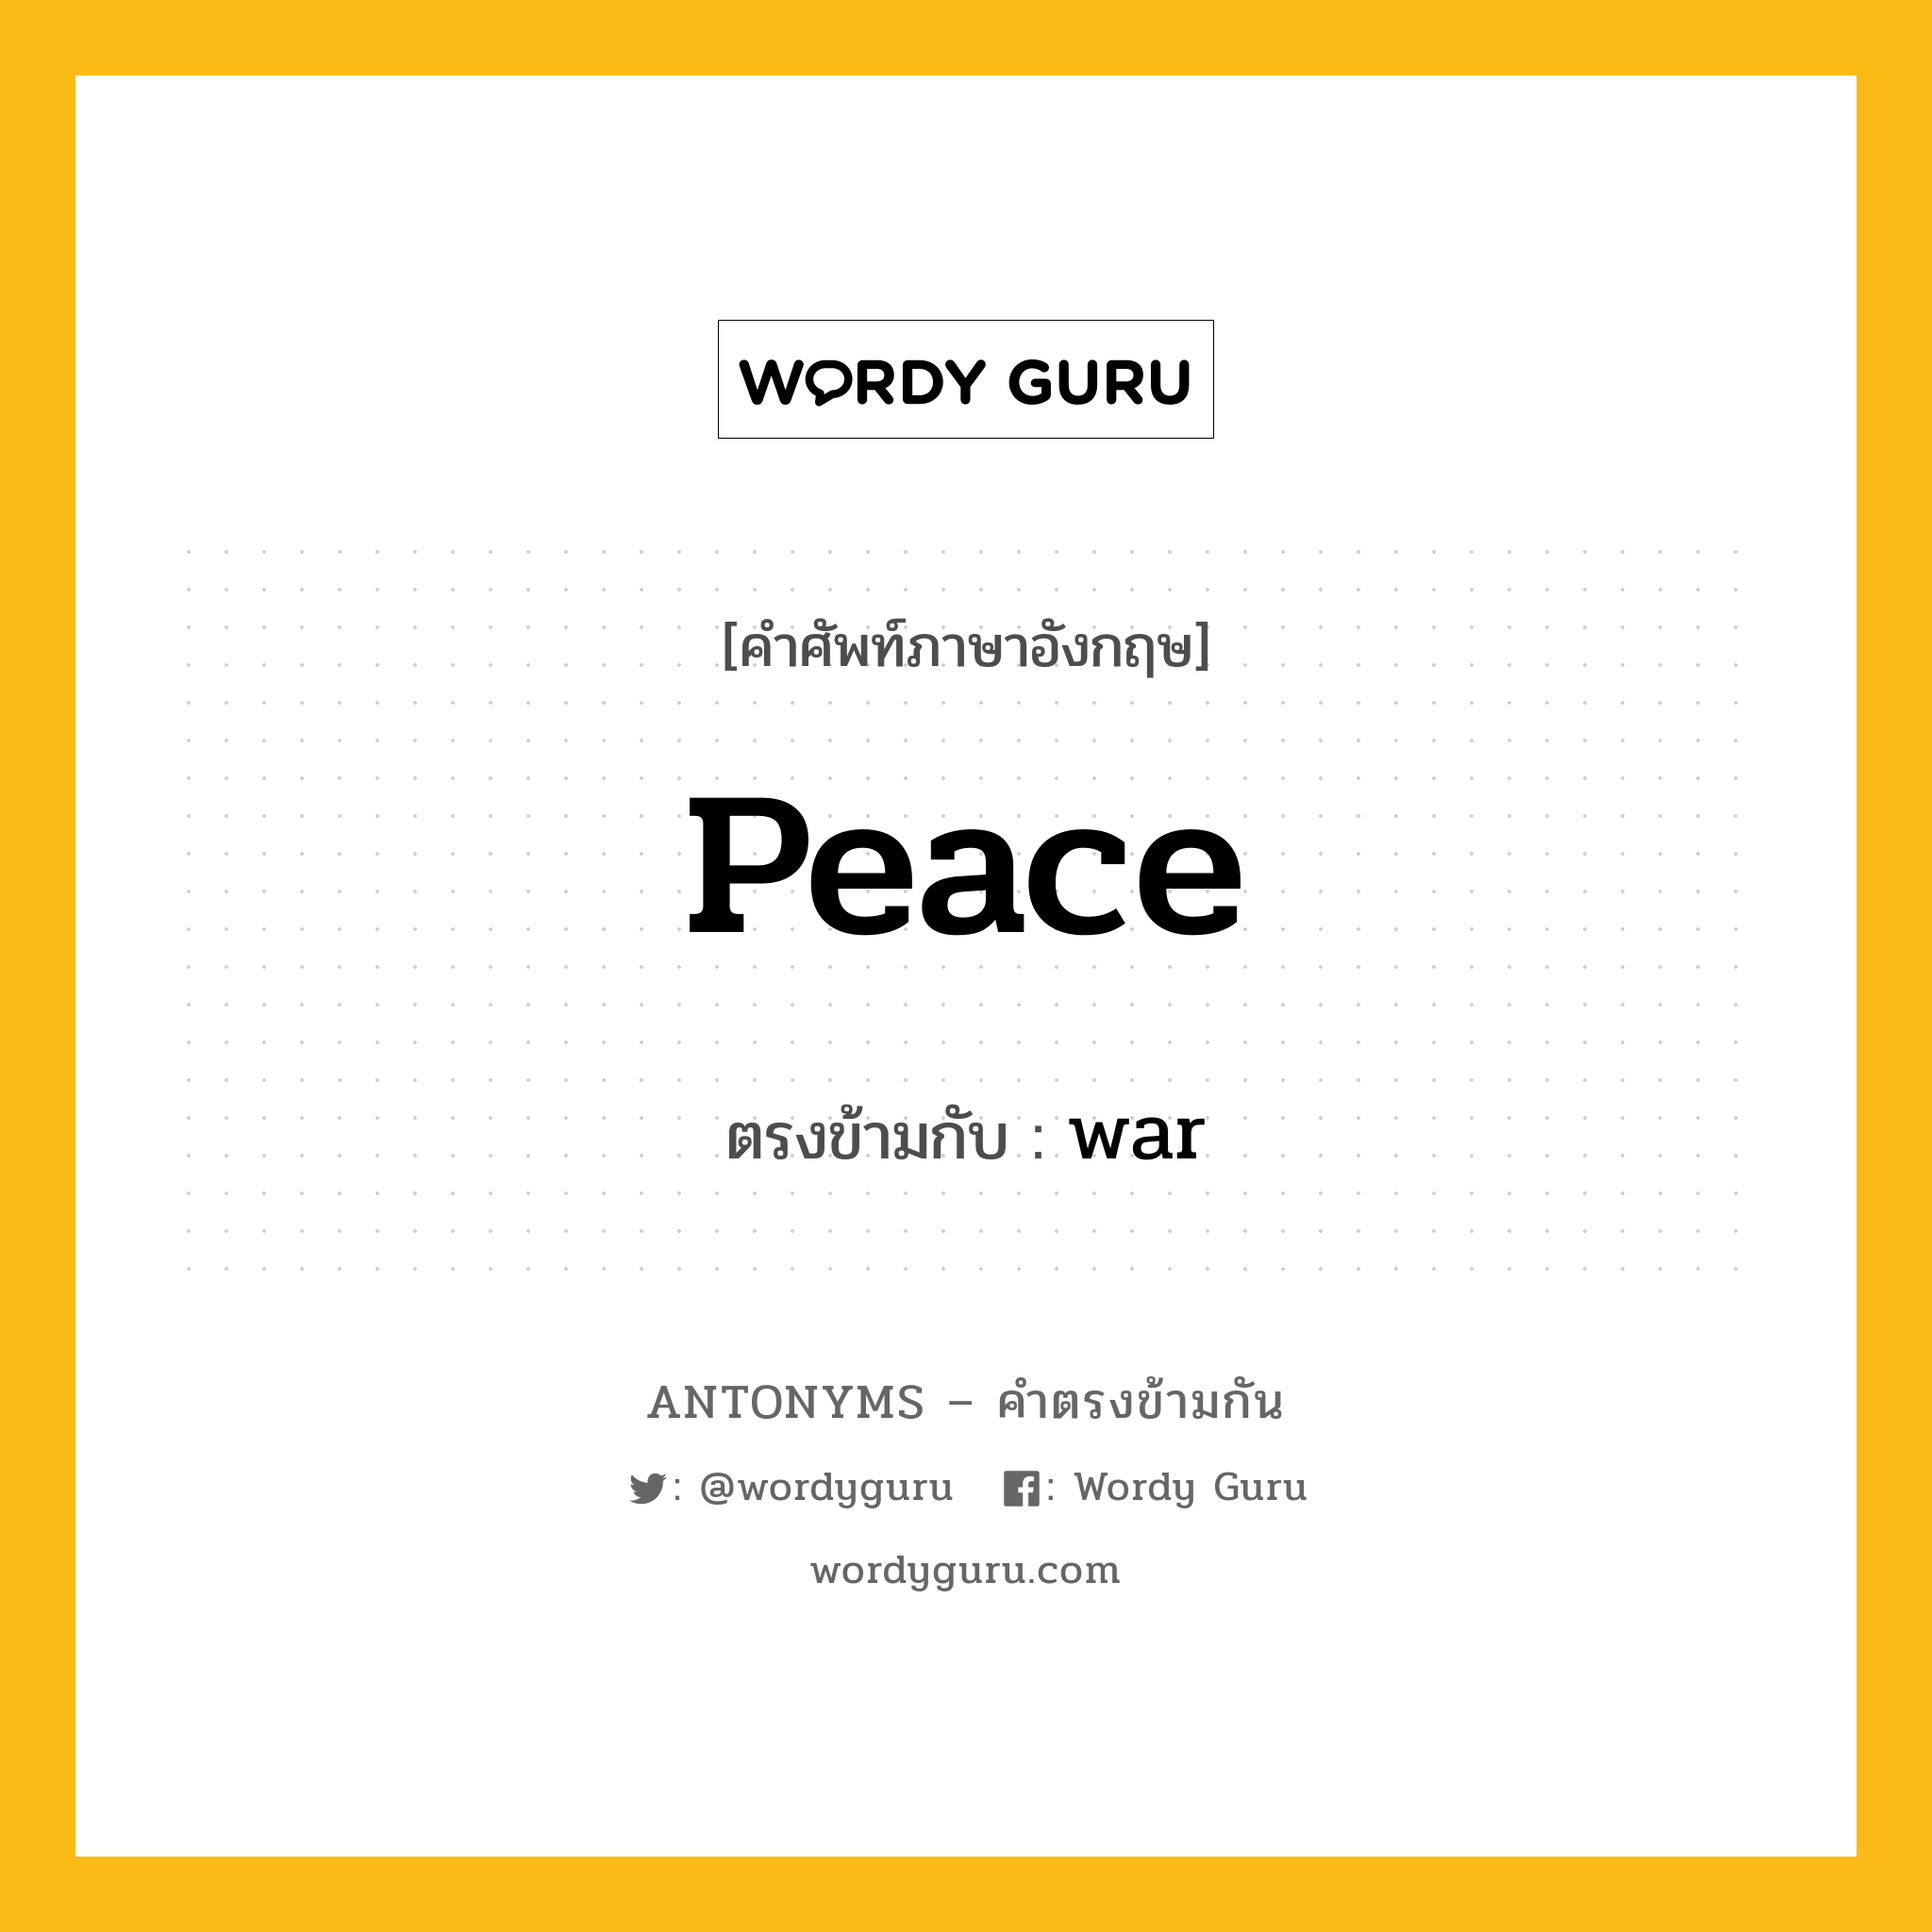 peace เป็นคำตรงข้ามกับคำไหนบ้าง?, คำศัพท์ภาษาอังกฤษ peace ตรงข้ามกับ war หมวด war